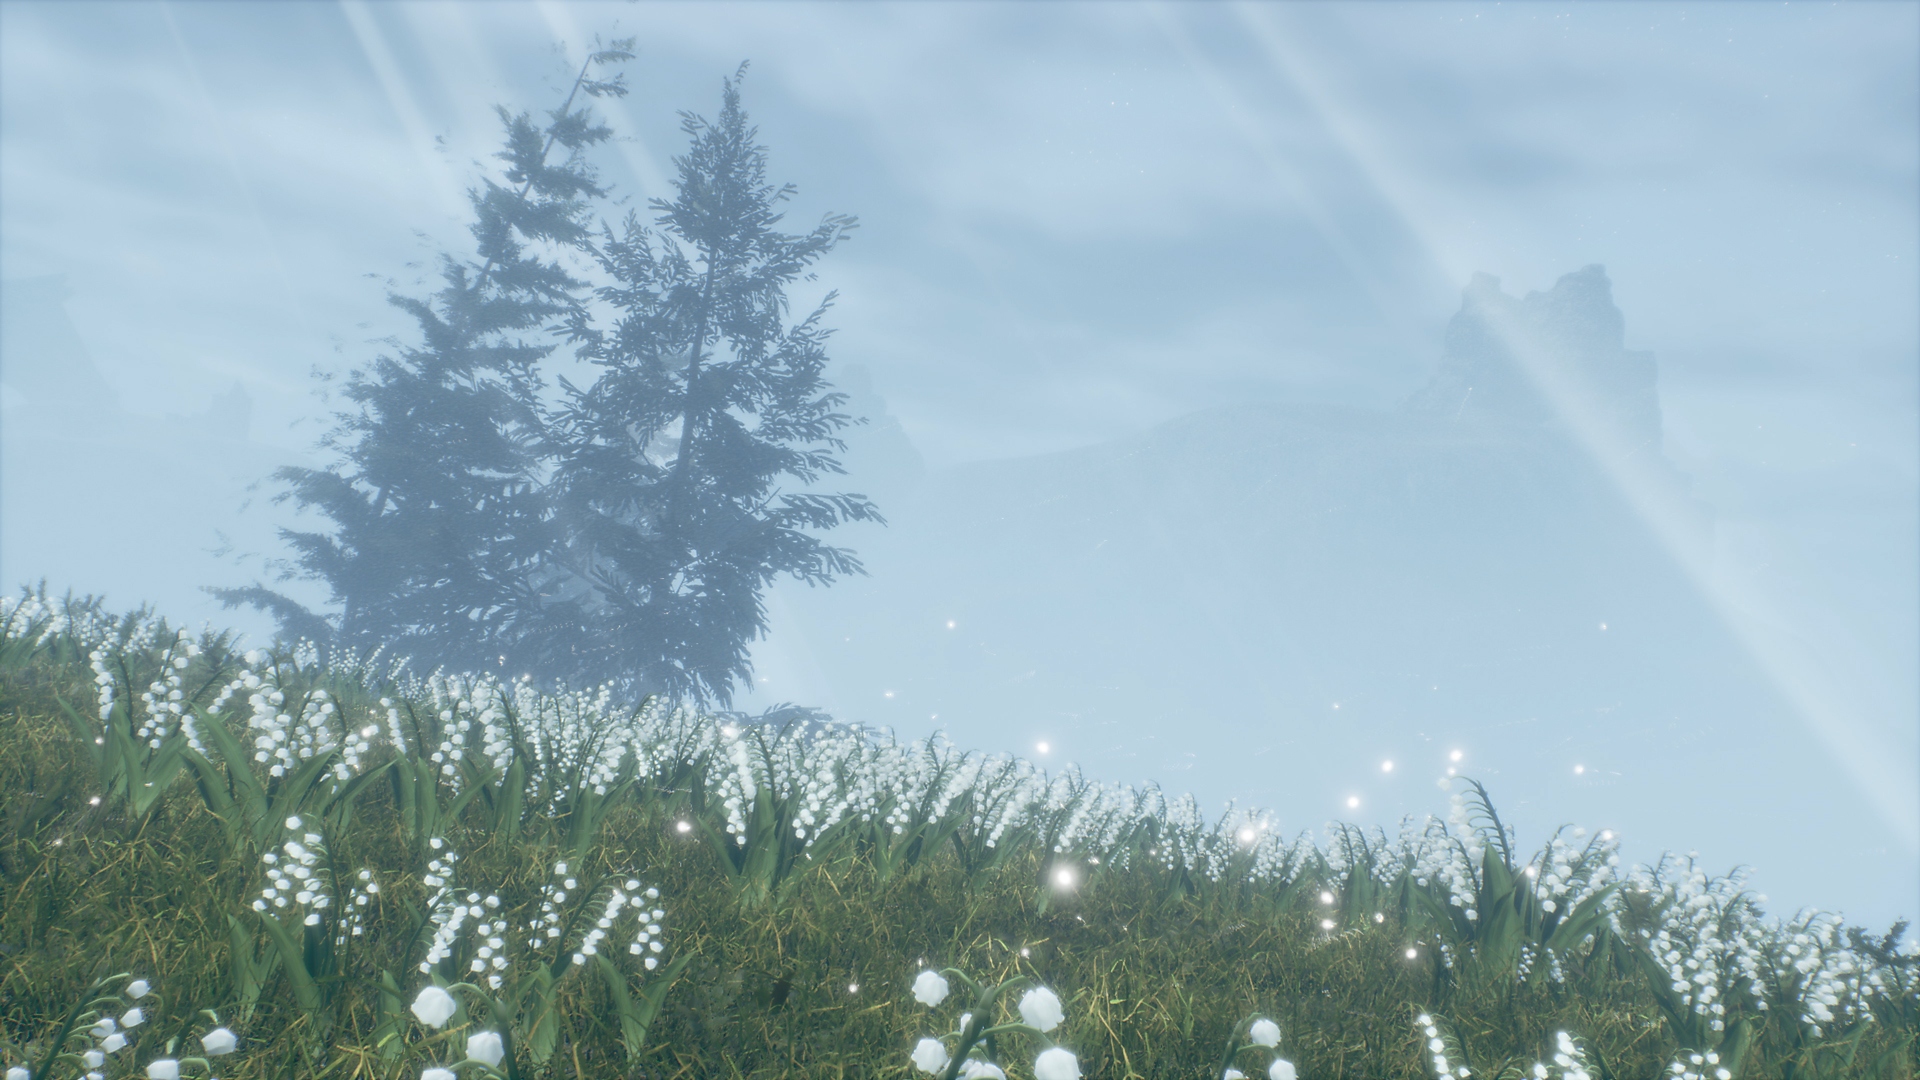 Valkyrie Elysium - Capture d'écran montrant deux arbres dans une zone herbeuse